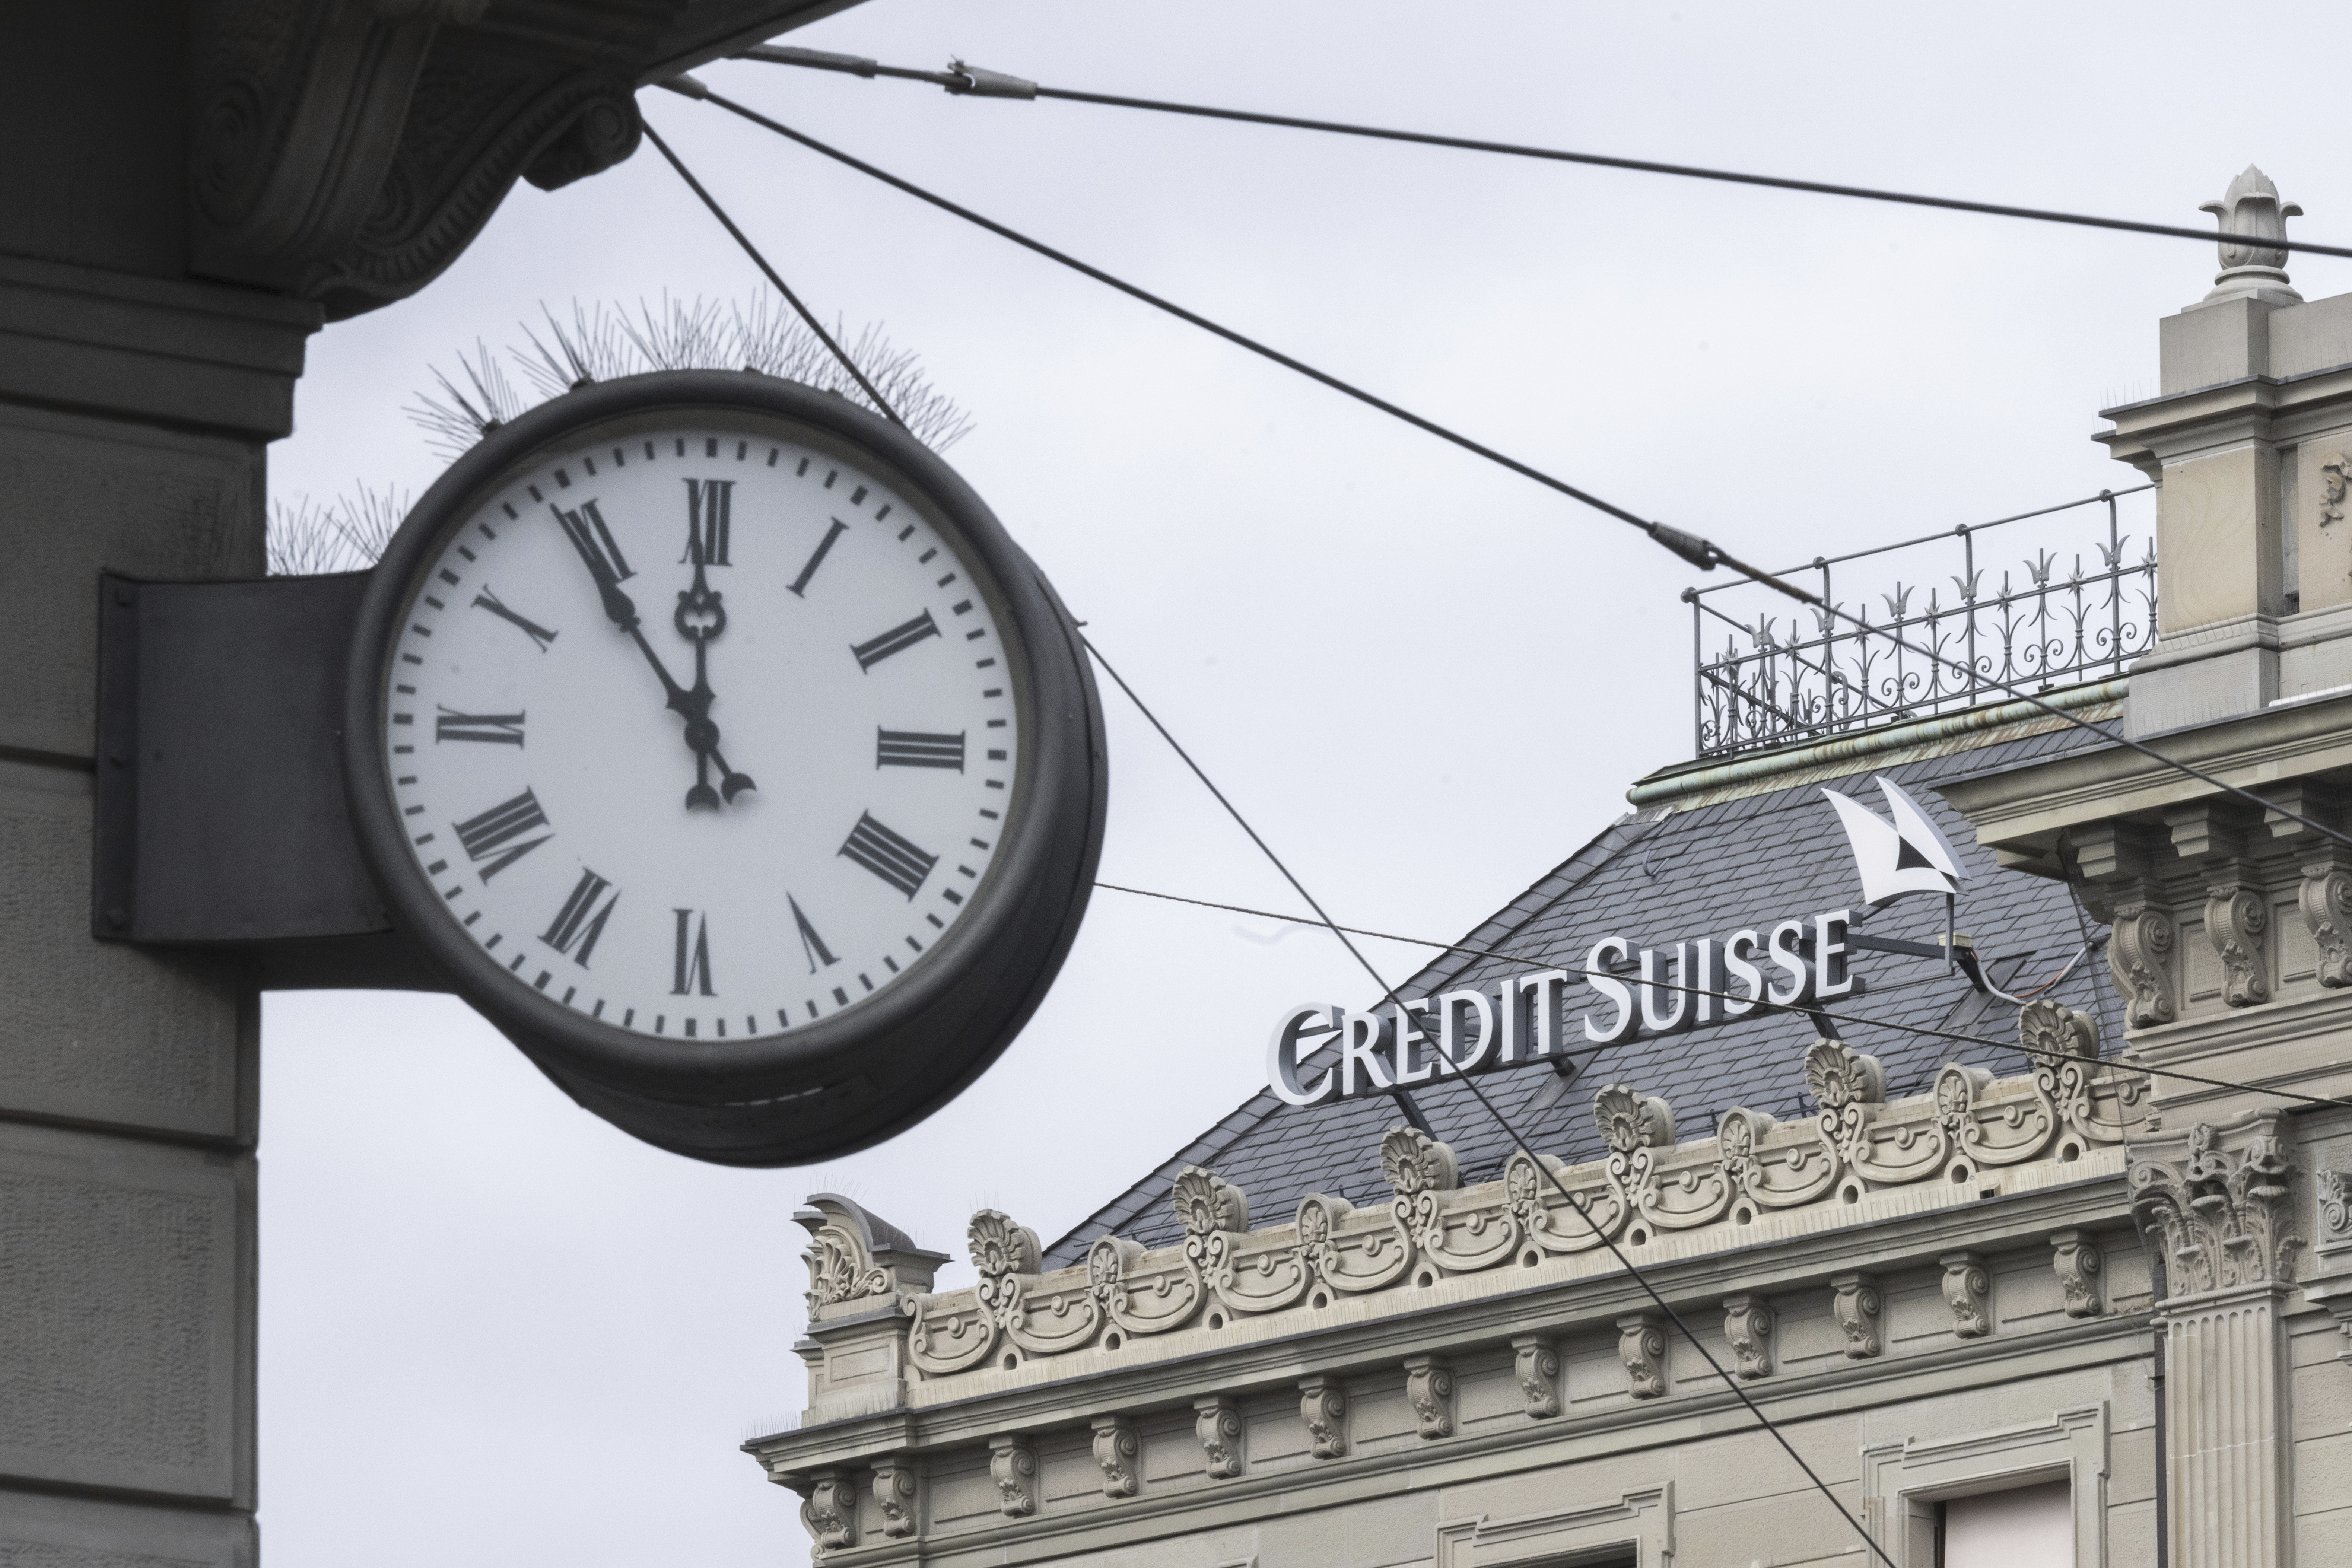 Un reloj al lado del logo del banco Credit Suisse, en Zúrich (Ennio Leanza/Keystone via AP)